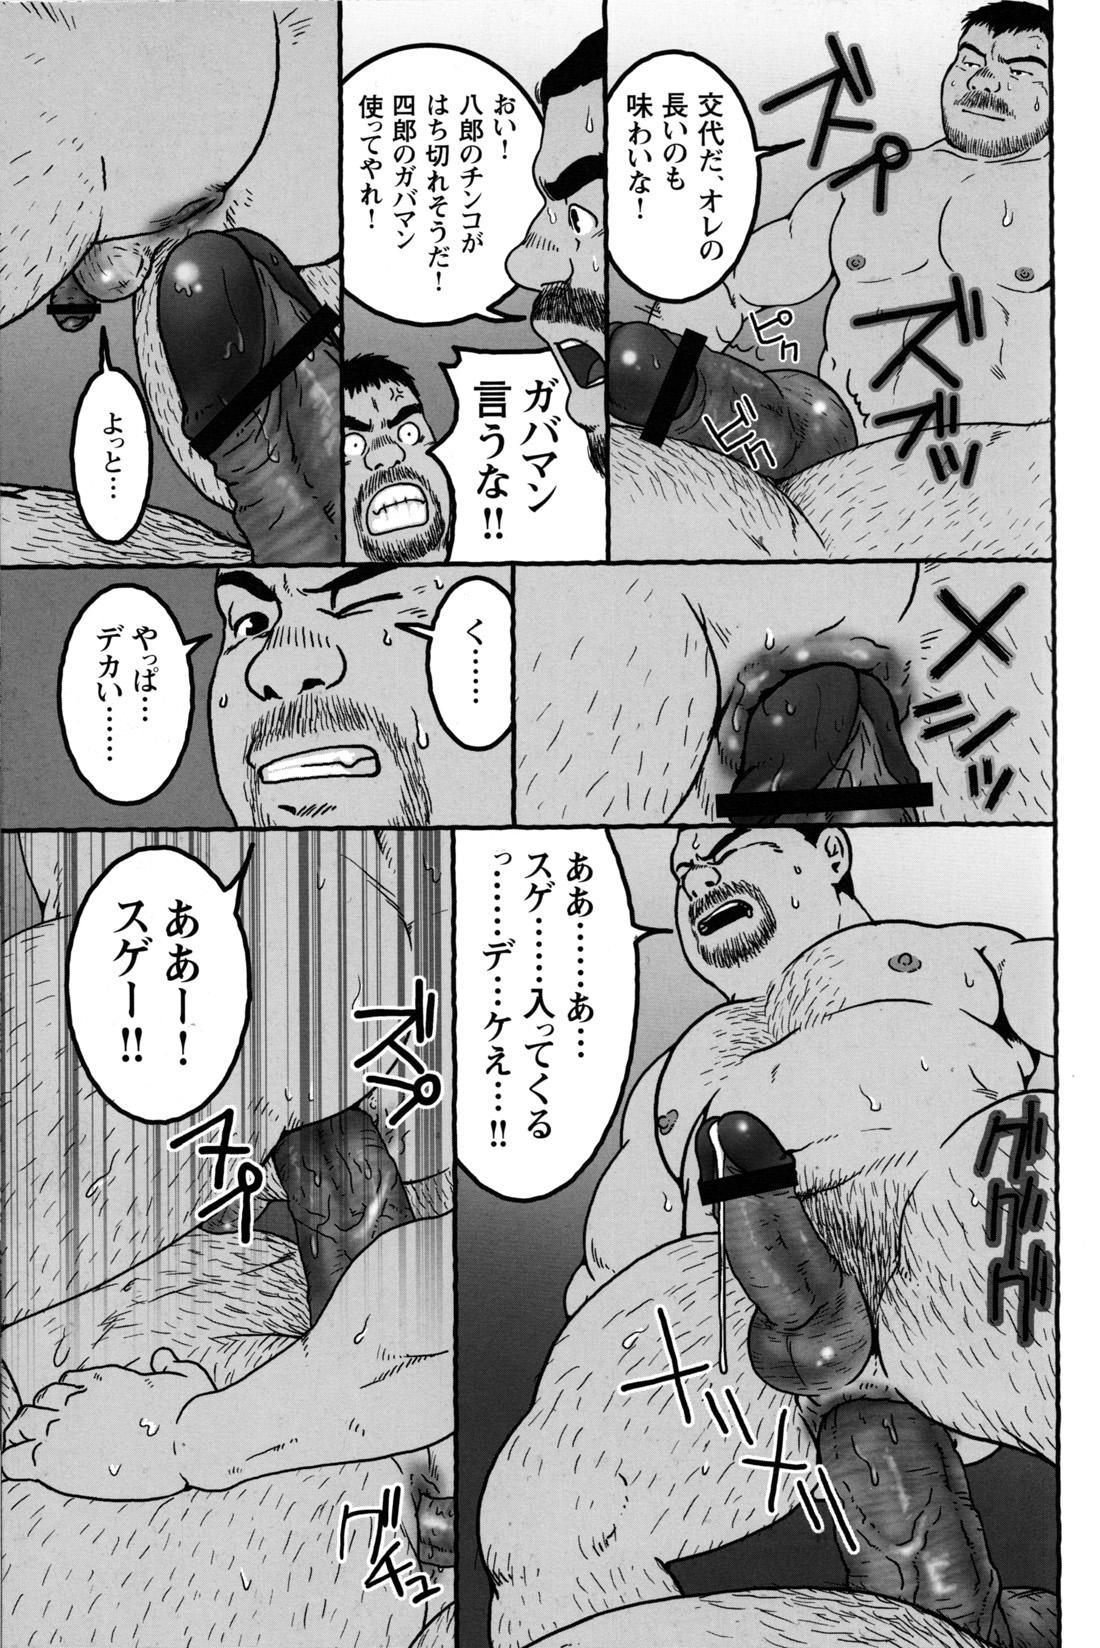 Comic G-men Gaho No.09 Gacchibi Zeme 142